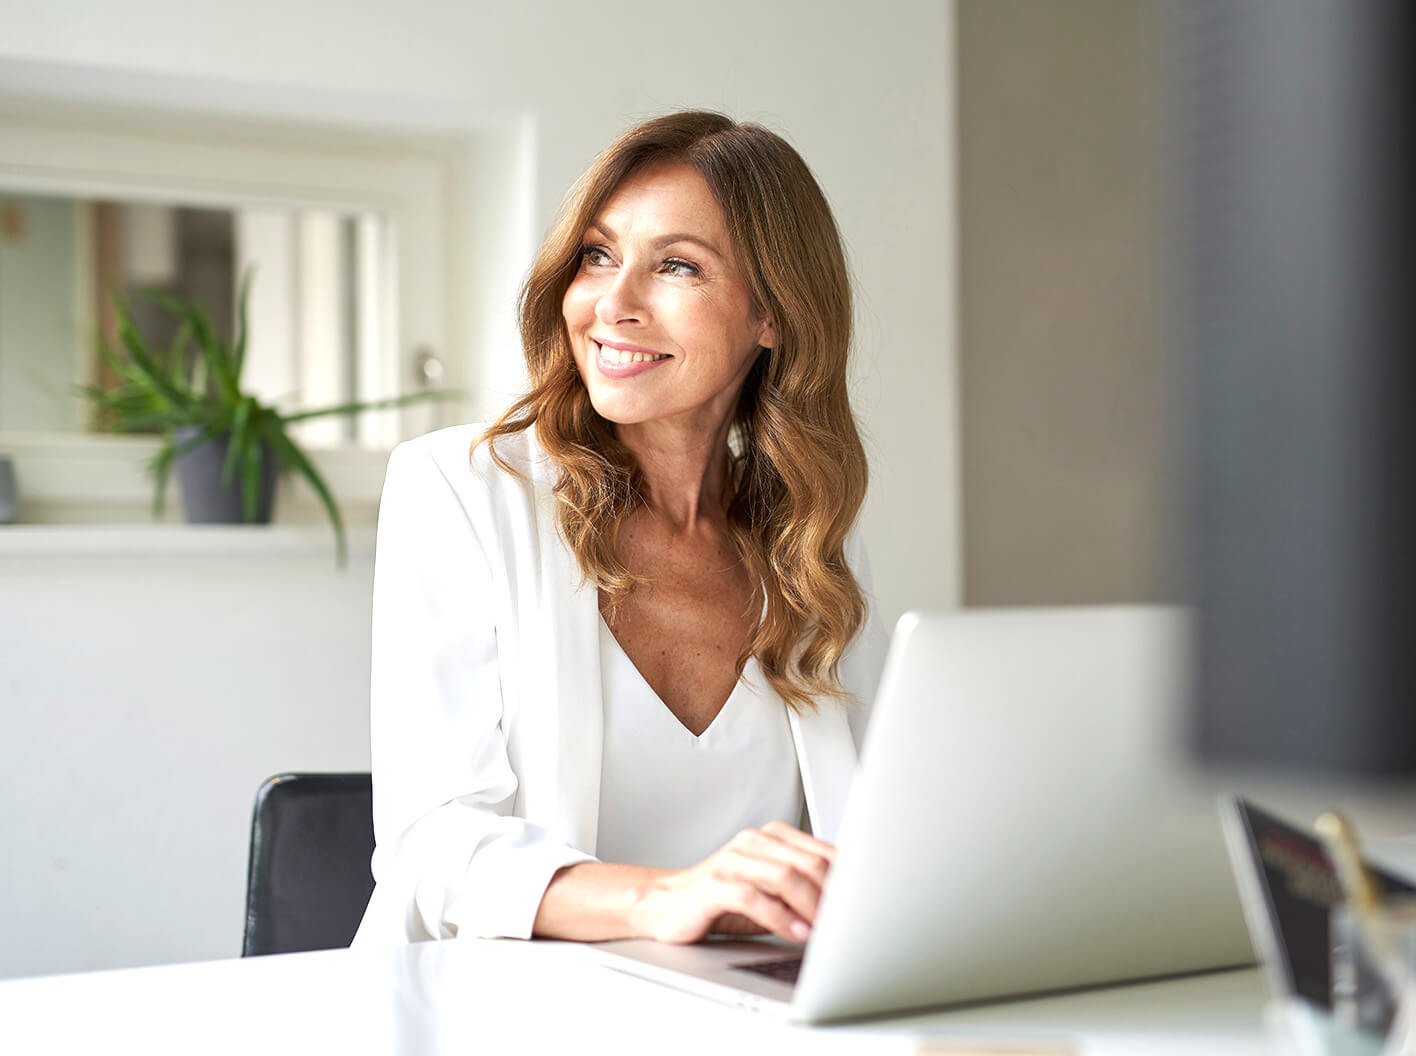 Mujer sonriente trabajando en una computadora portátil en un escritorio de oficina.